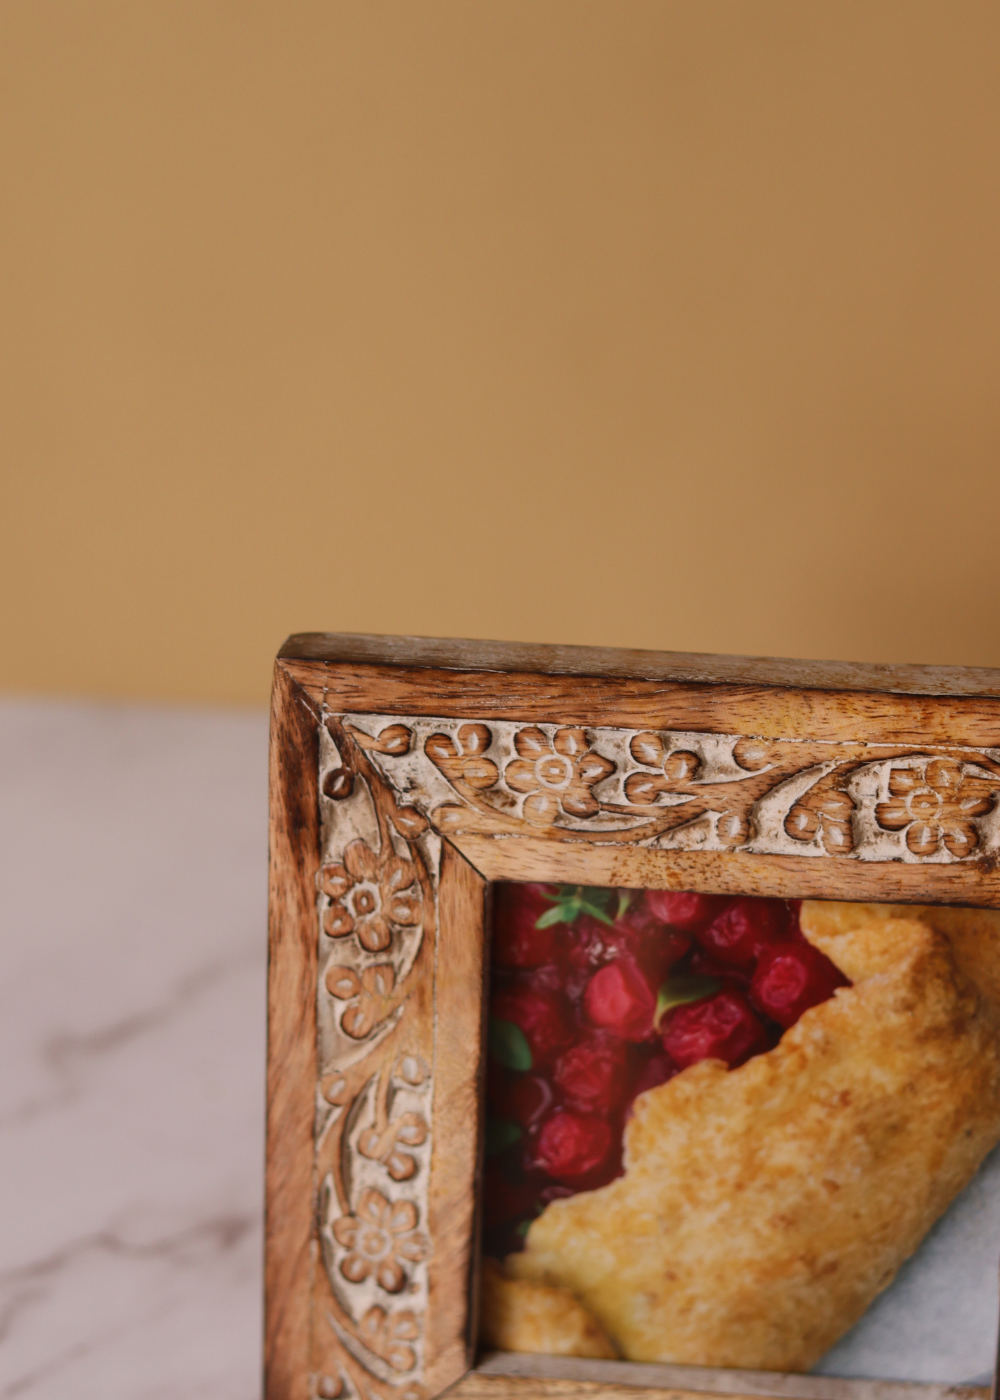 Carved floral wooden frame closeup